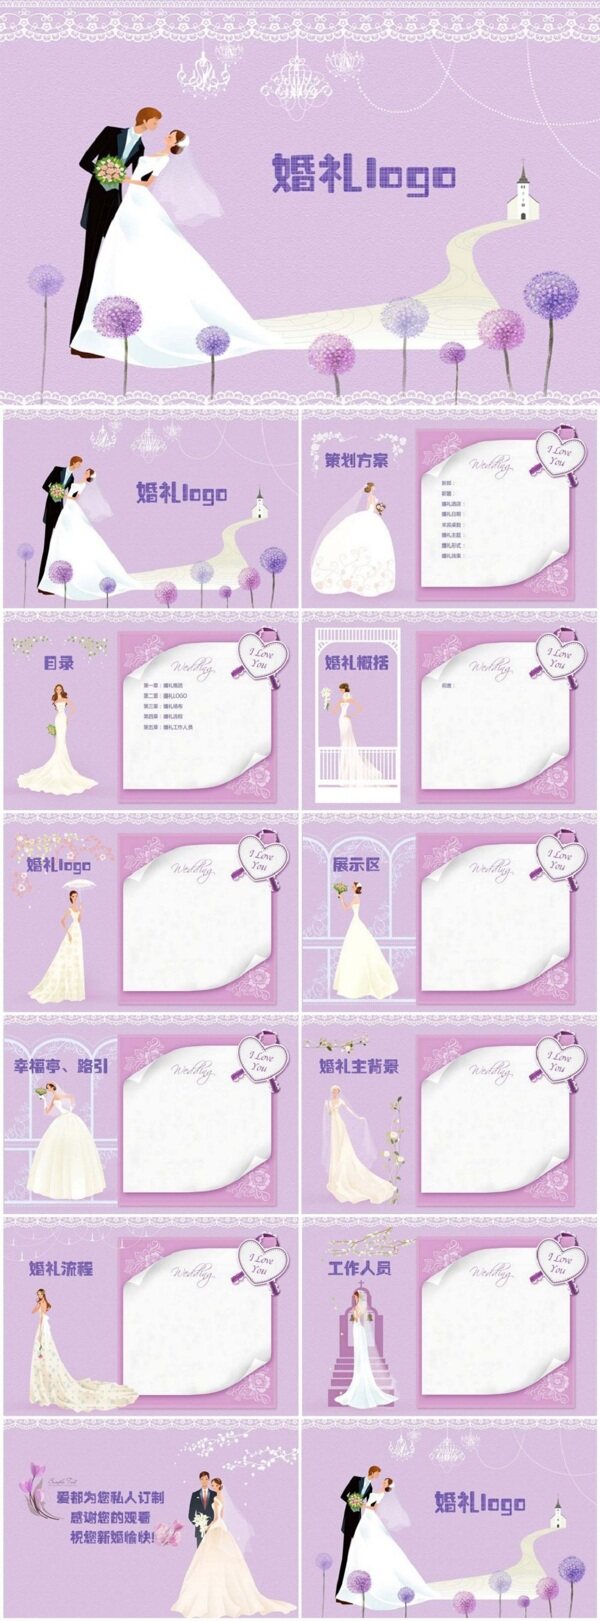 紫色浪漫婚礼主题ppt图片素材